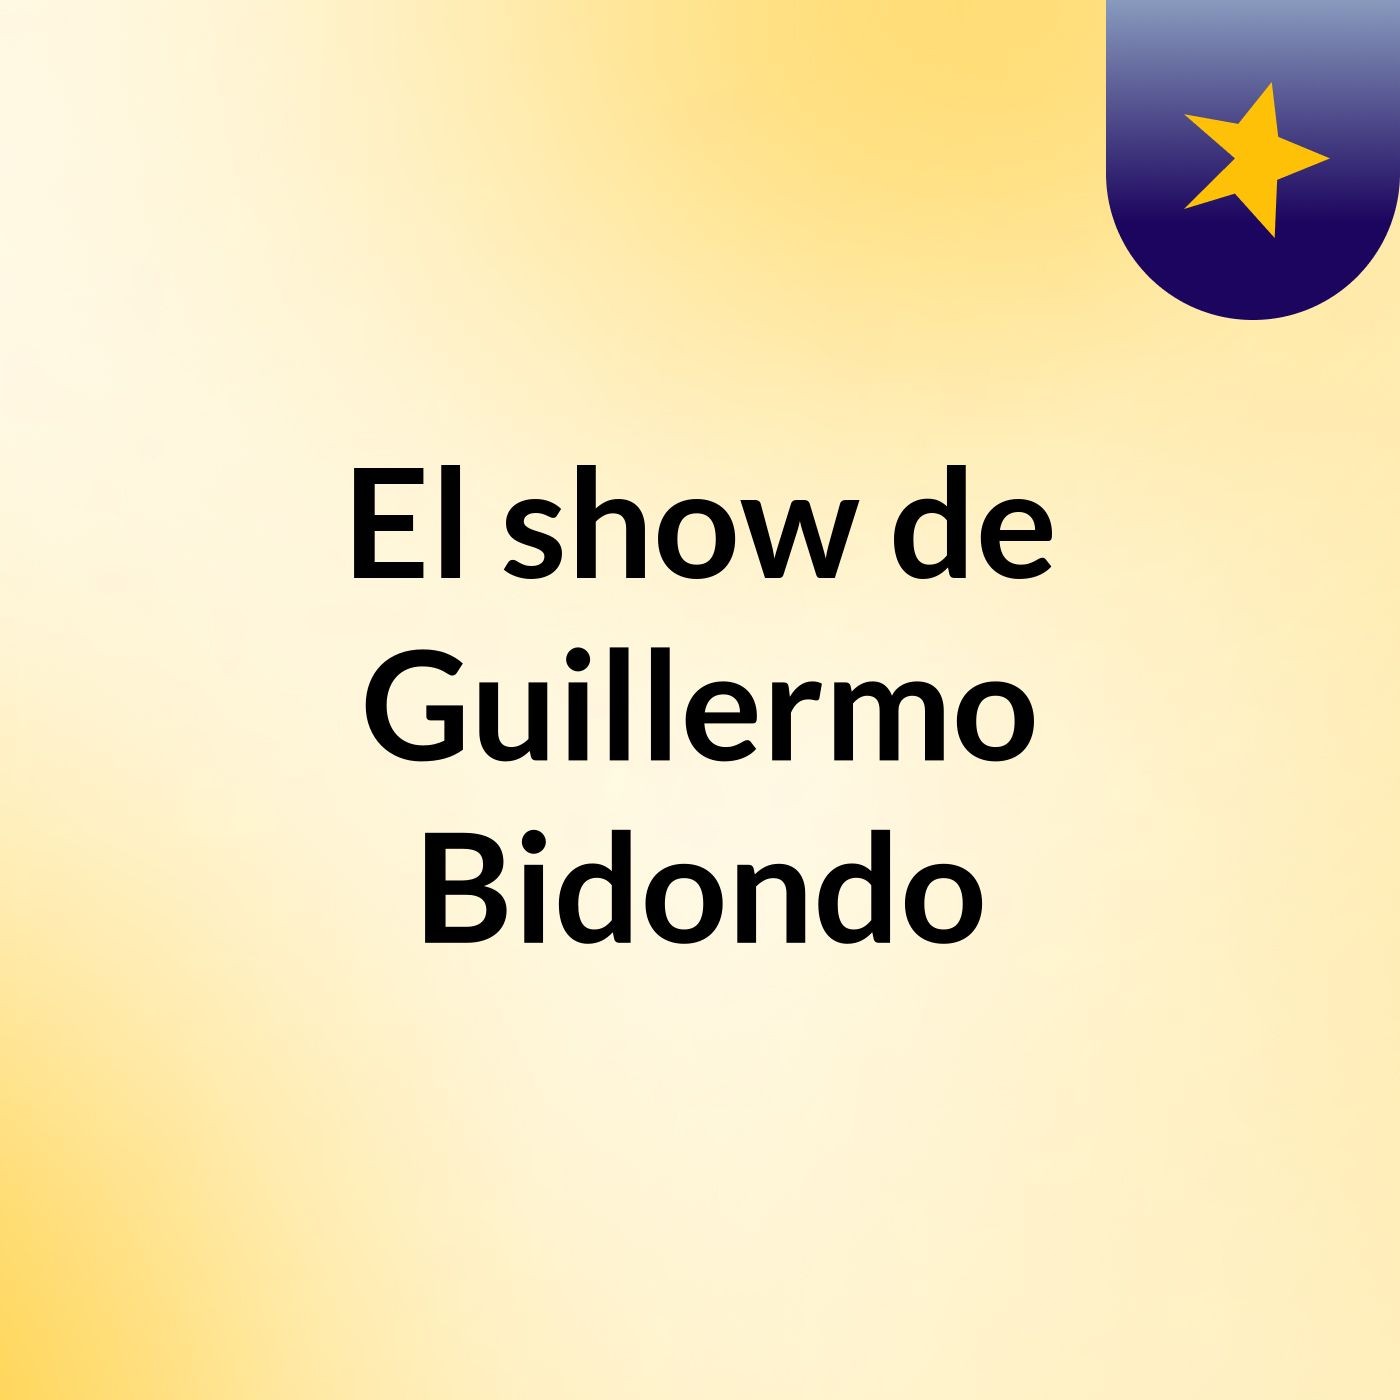 El show de Guillermo Bidondo